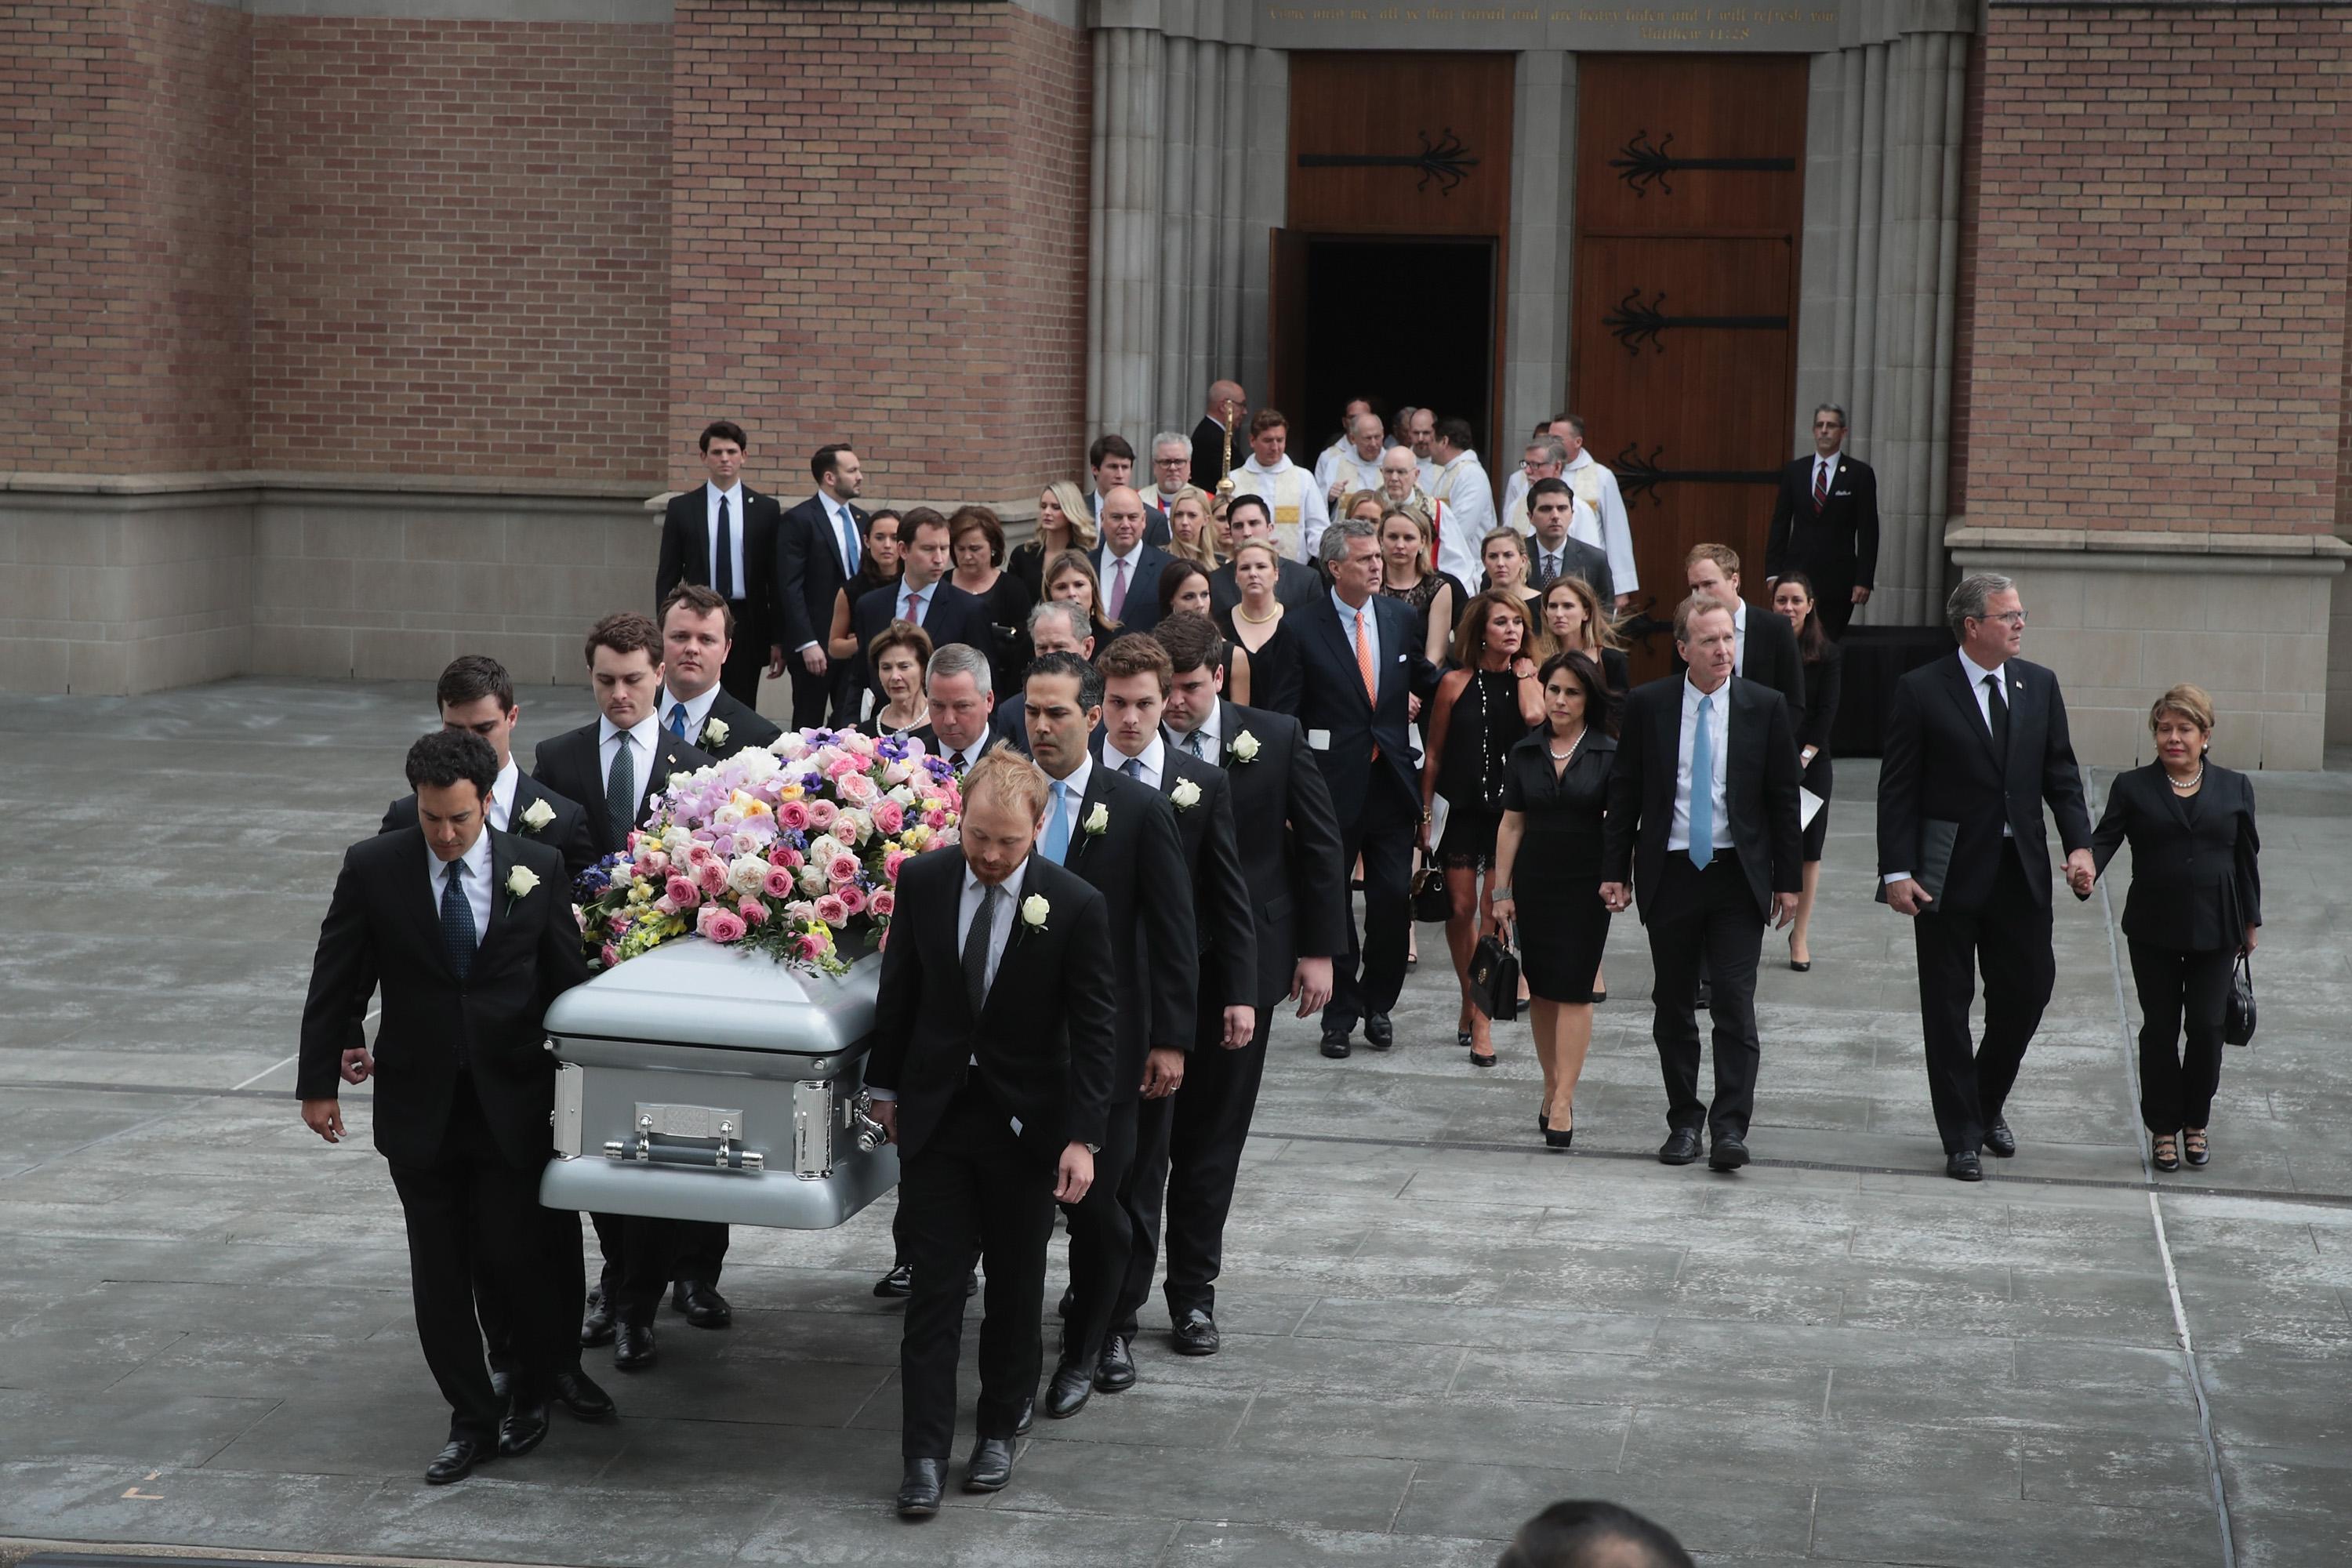 Barbara Buš sahranjena pored svoje kćerke